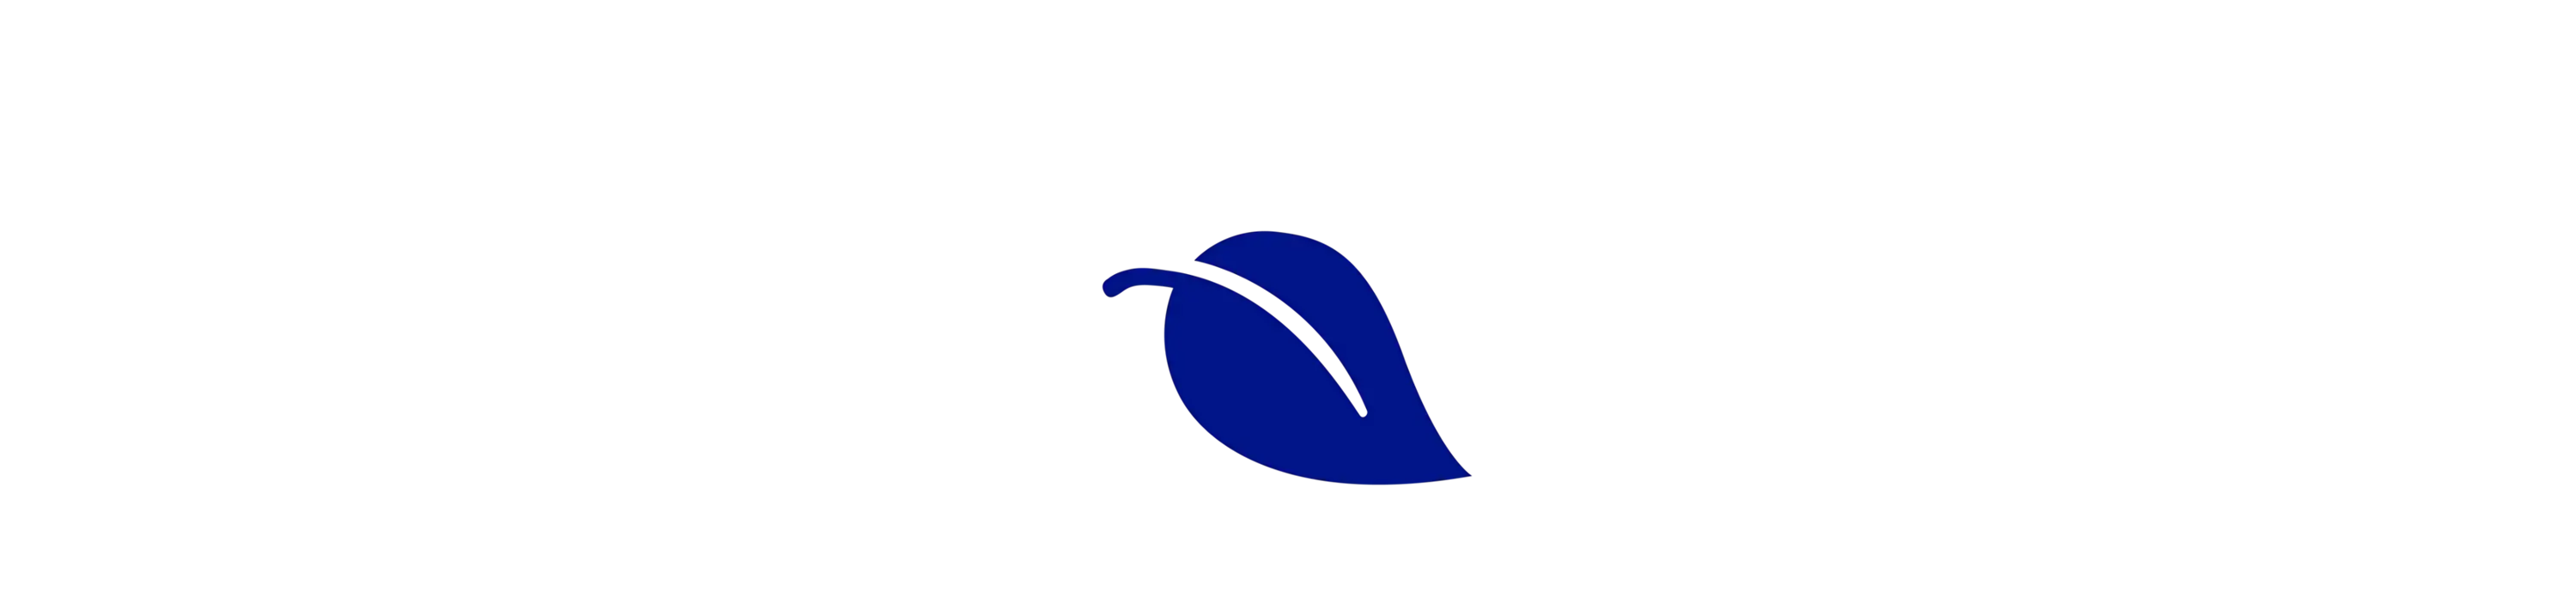 logo della foglia